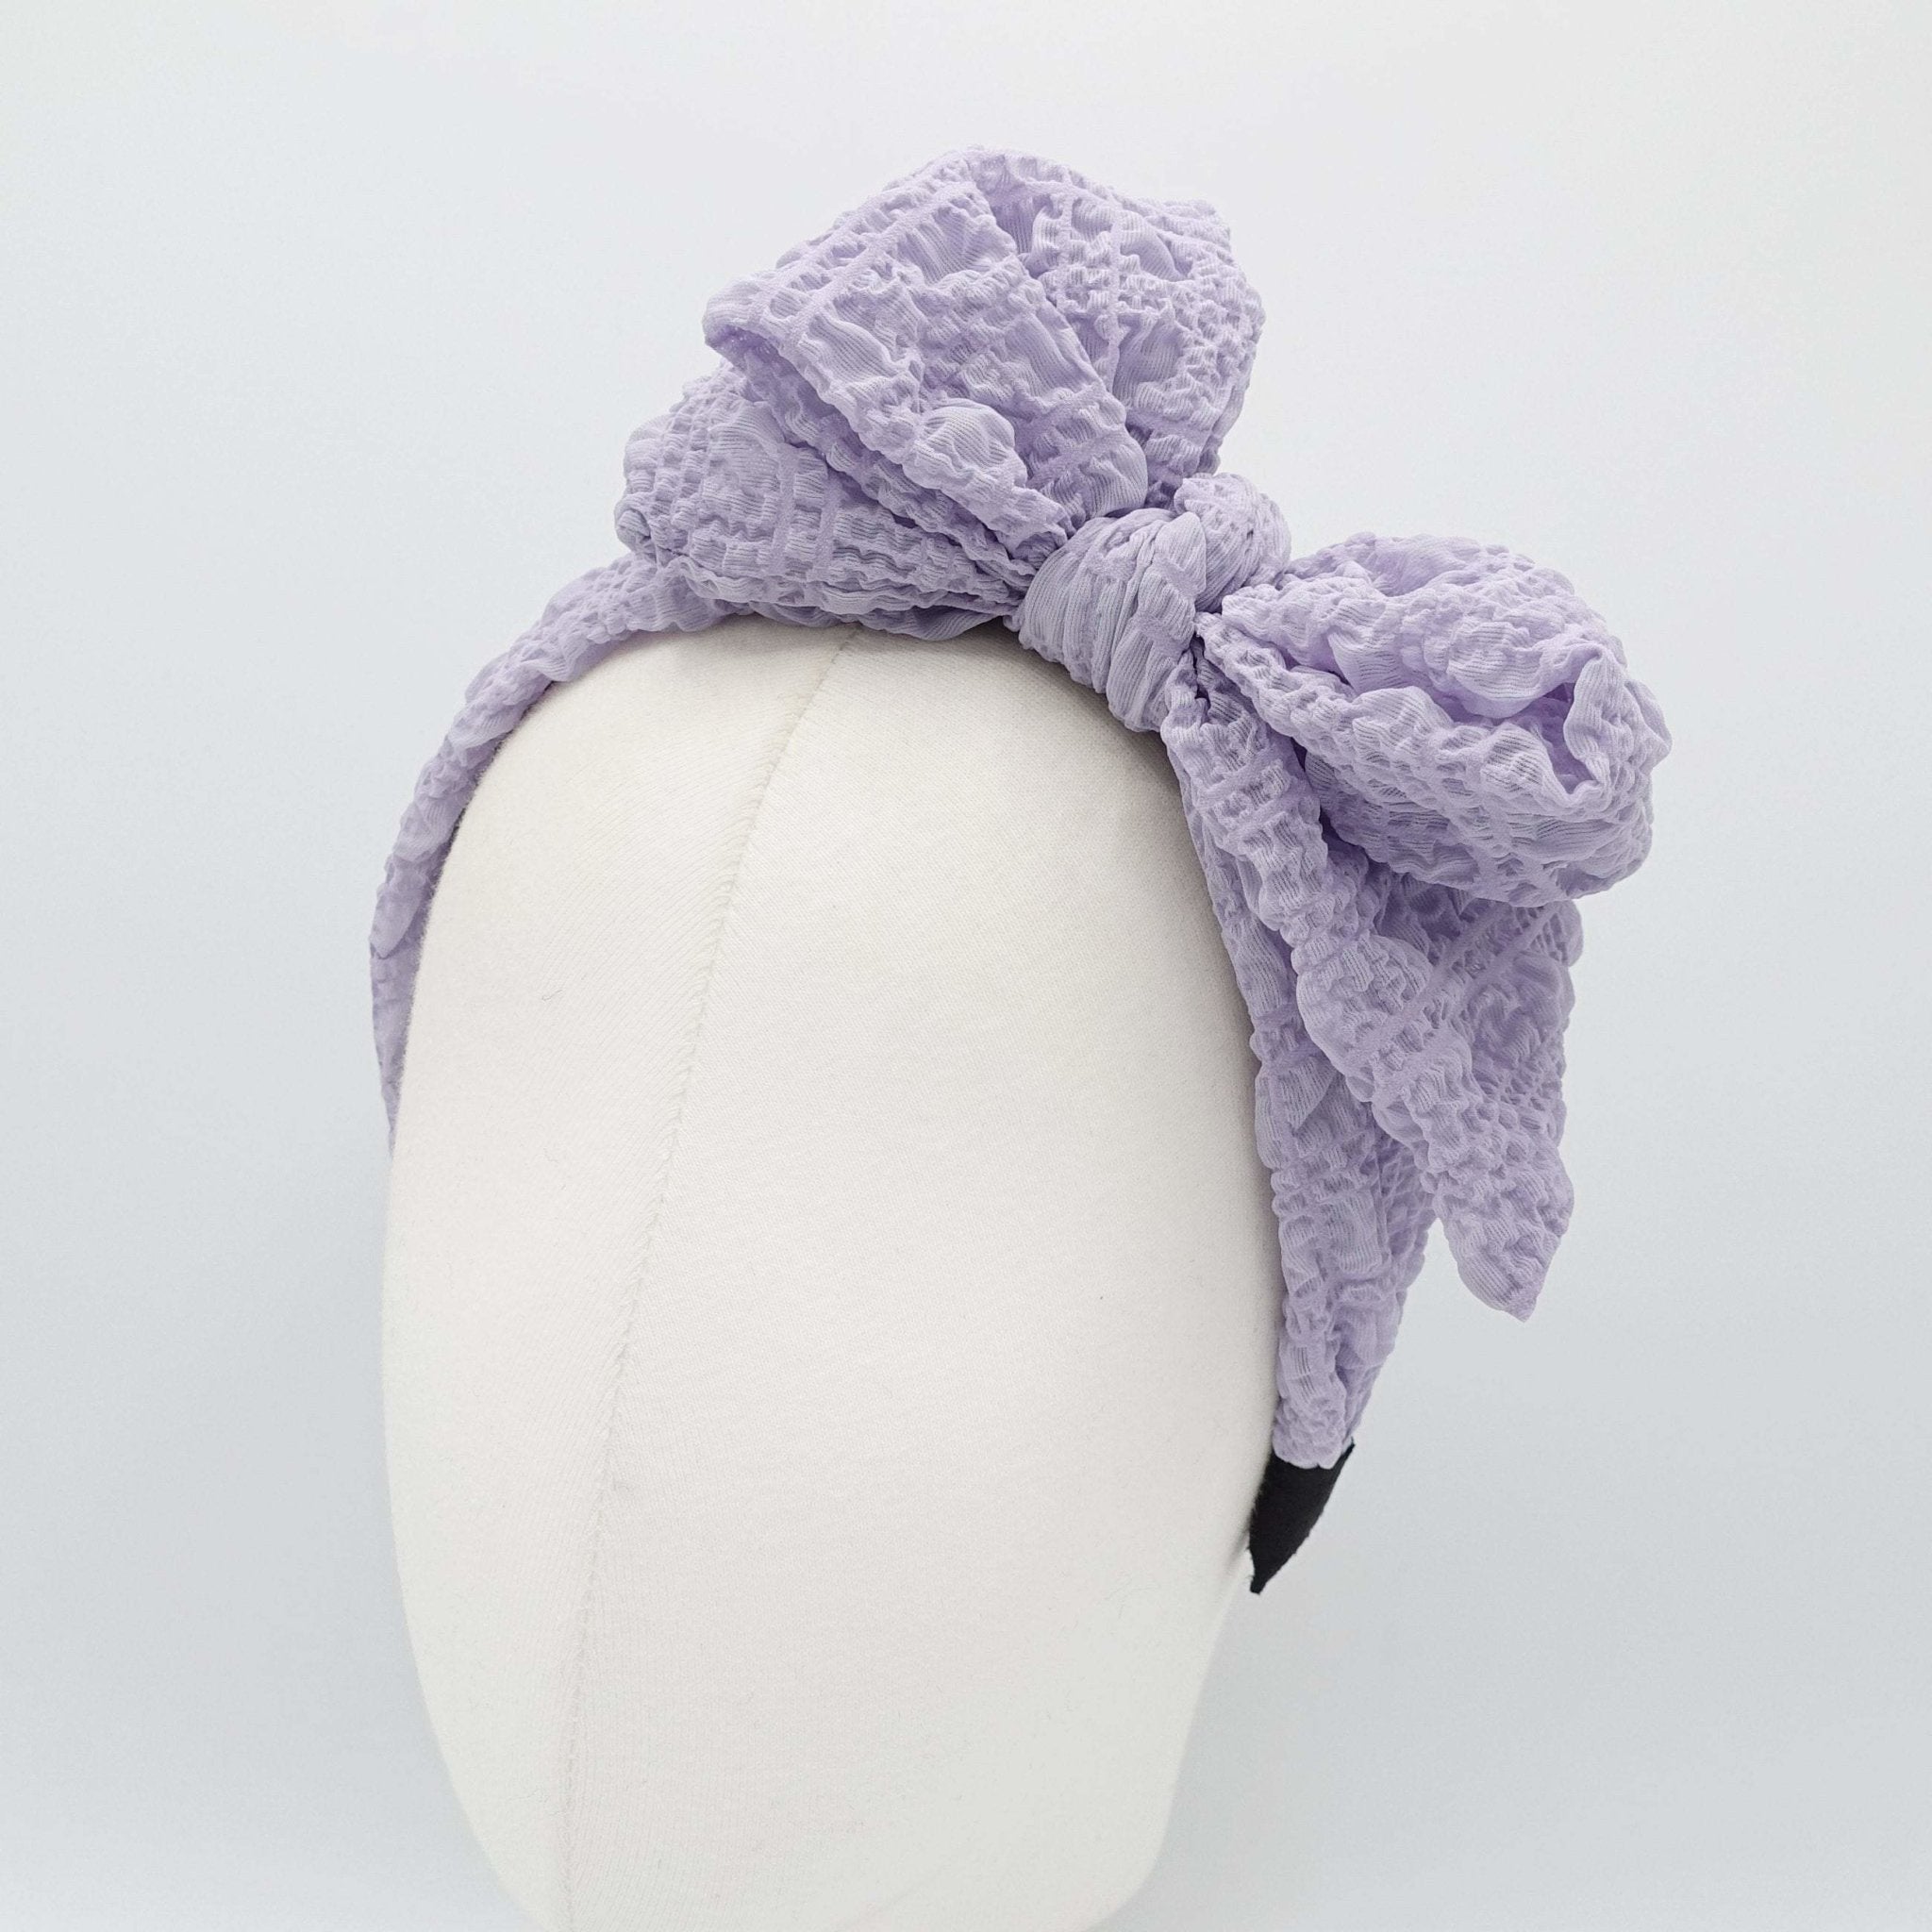 VeryShine Headband Light violet Spring headband bumpy bow knot hairband for women